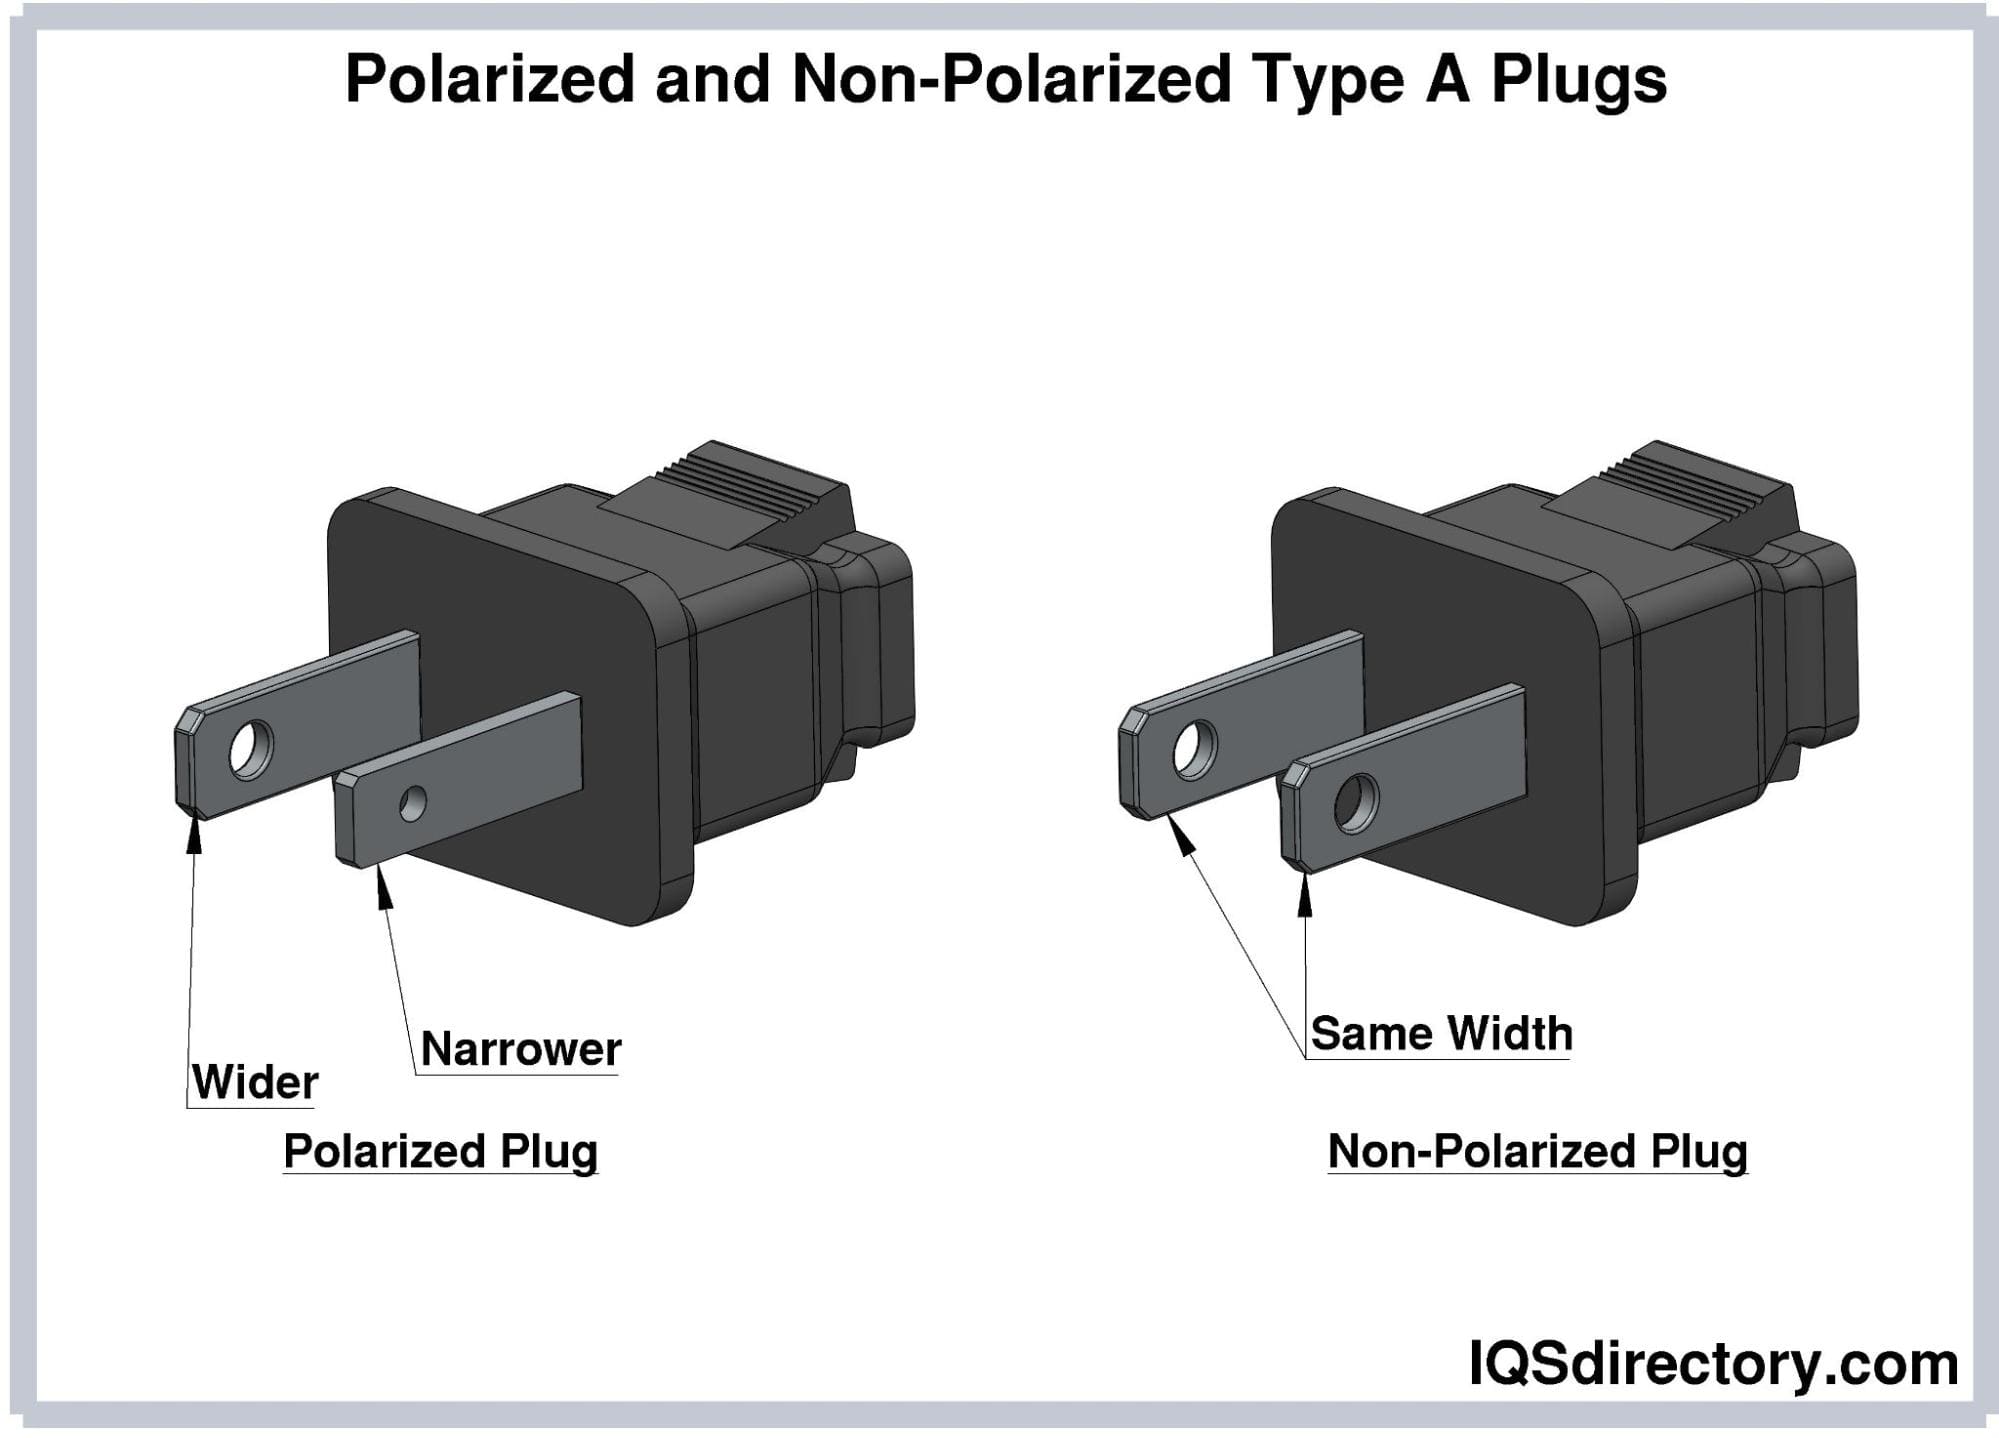 Polarized and Non-Polarized Type A Plugs